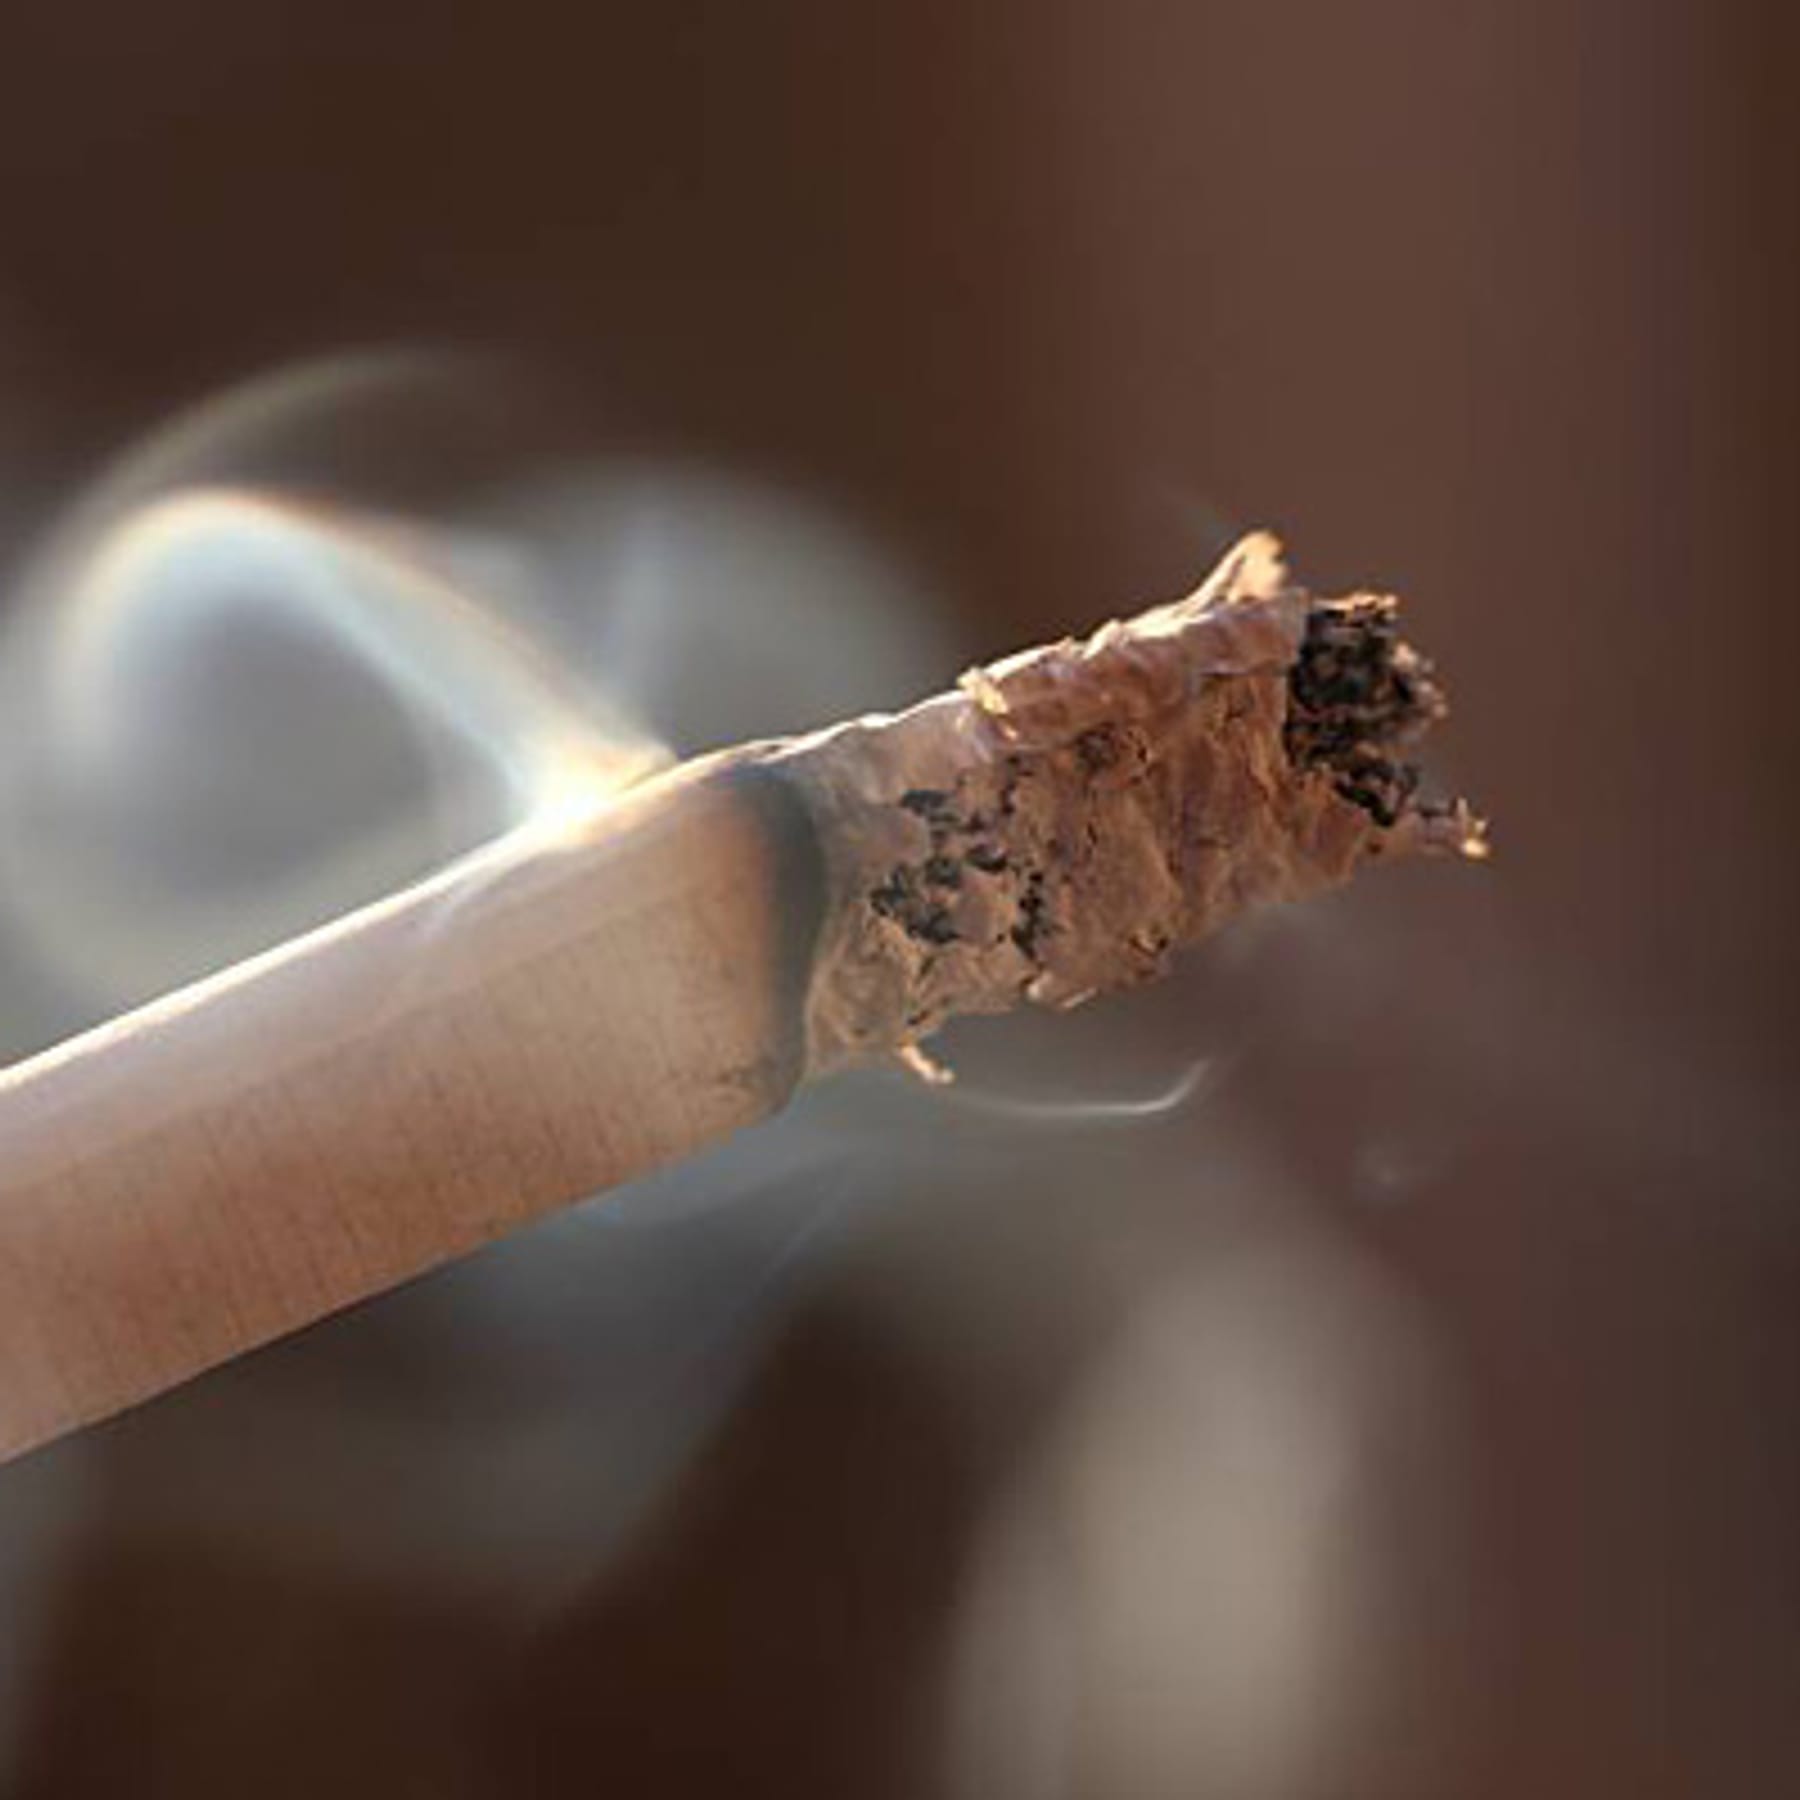 Rauchen zählt zu den größten Risiken für die Blutgefäße